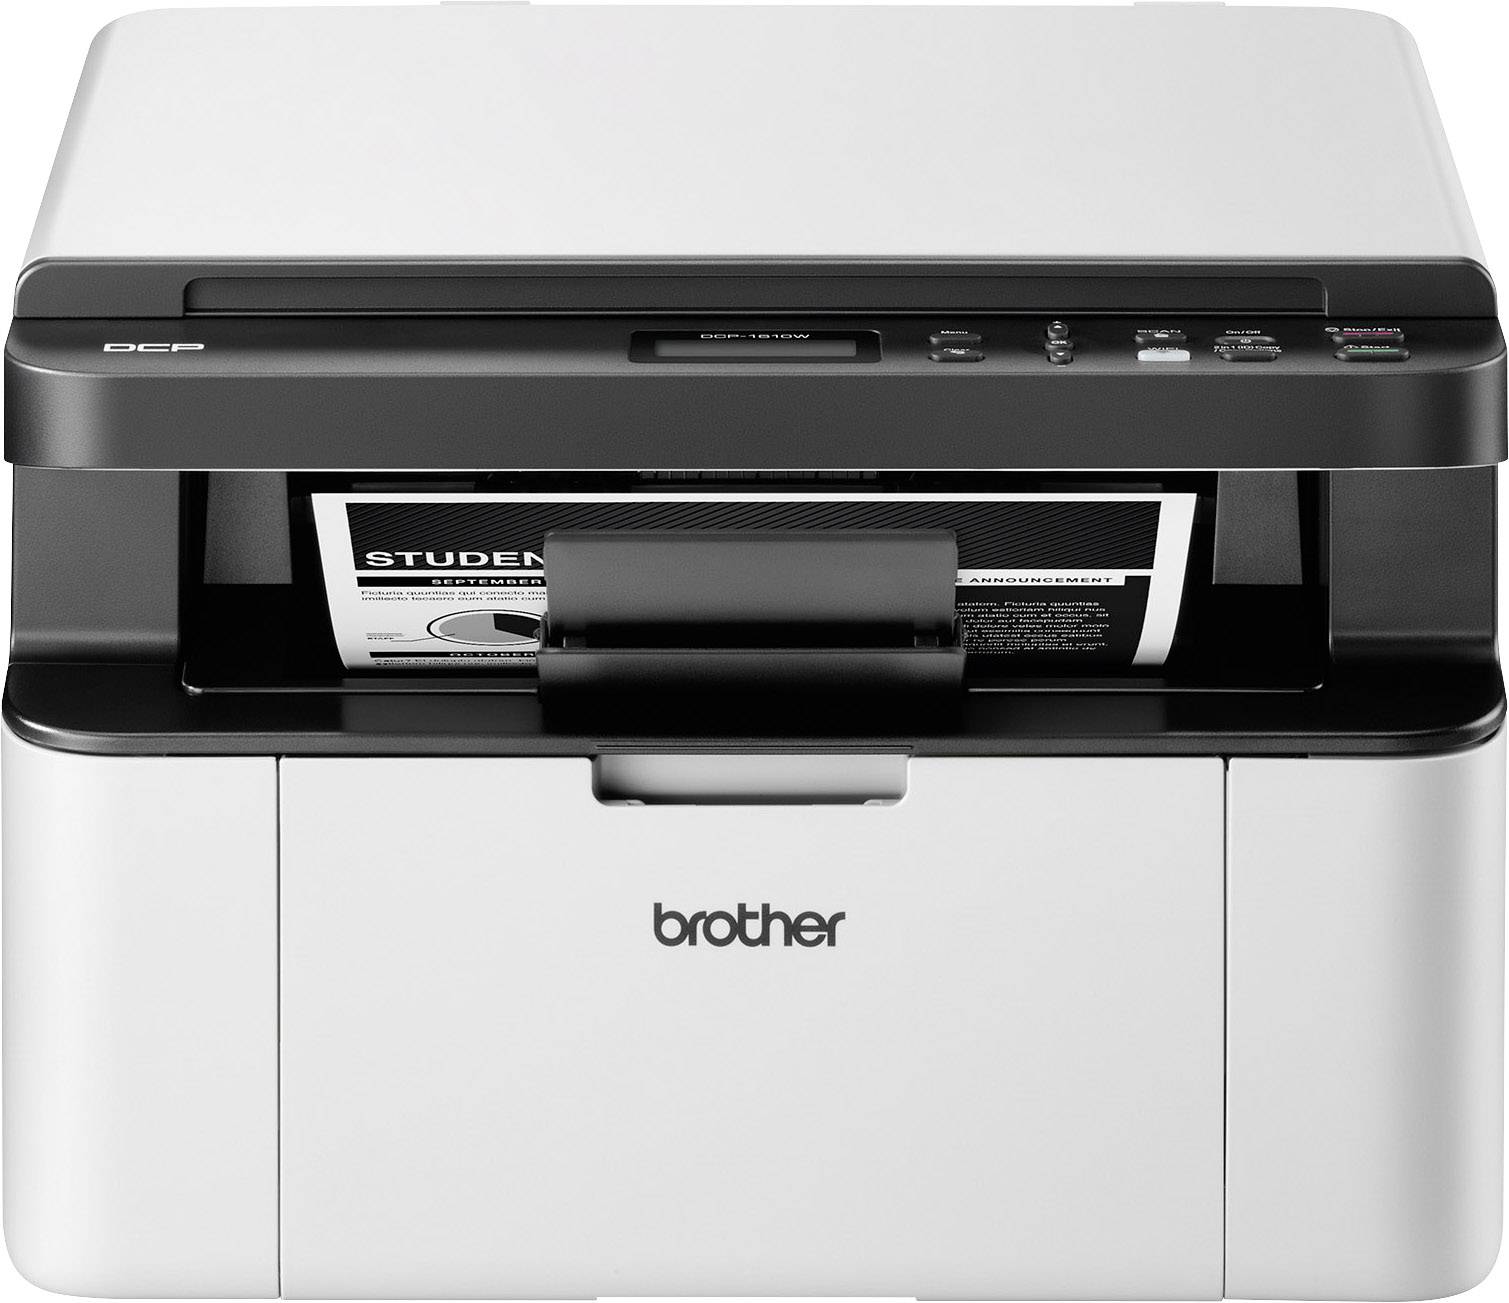 Brother DCP-1610W Schwarzweiß Laser kaufen Scanner, WLAN USB, Kopierer Drucker, A4 Multifunktionsdrucker